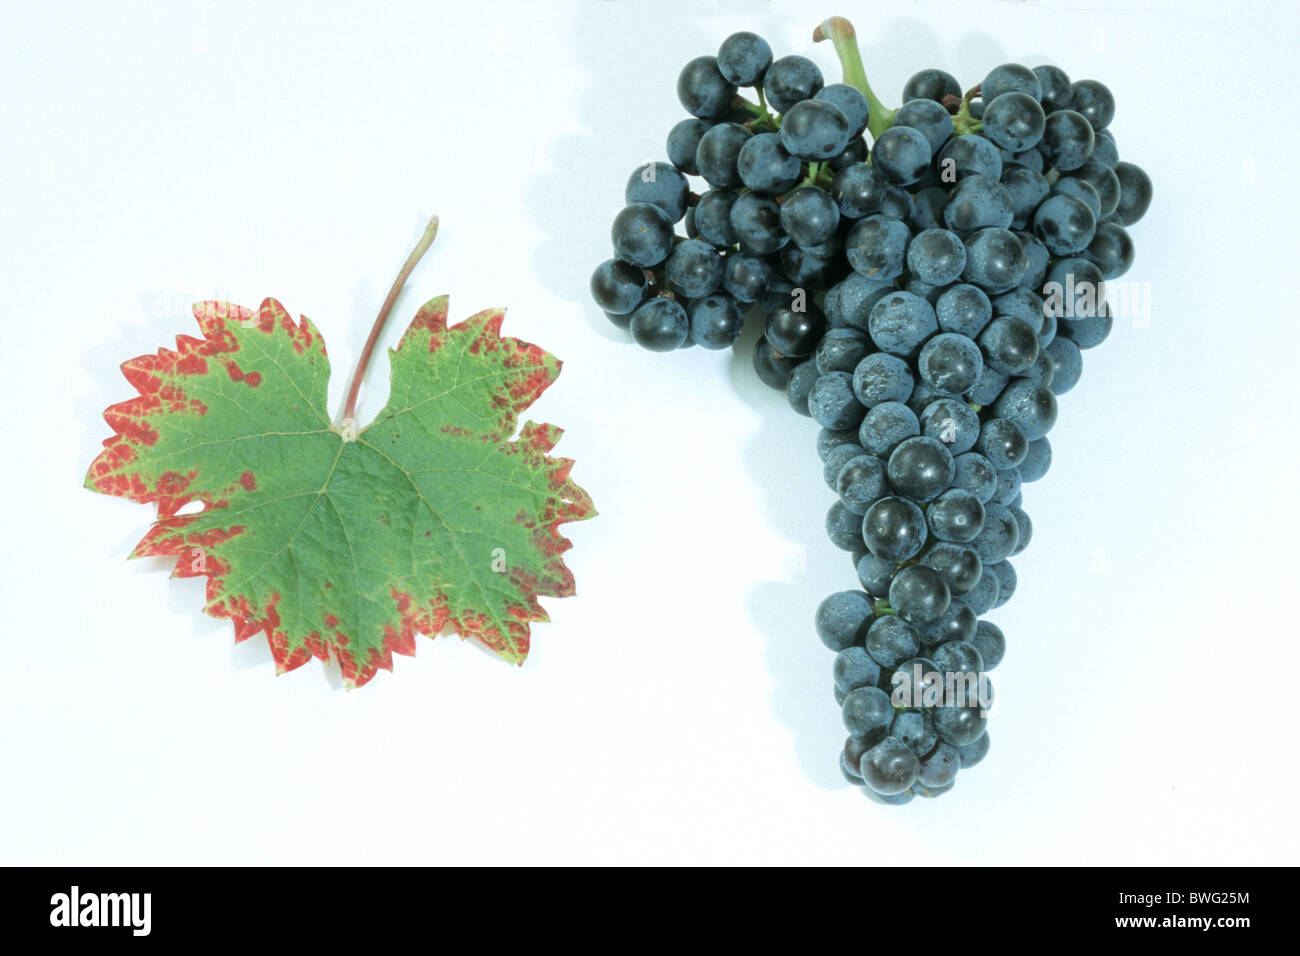 La Vigne, le raisin, la vigne (Vitis vinifera), variété : Dornfelder, grappe de raisins et de feuilles, studio photo. Banque D'Images